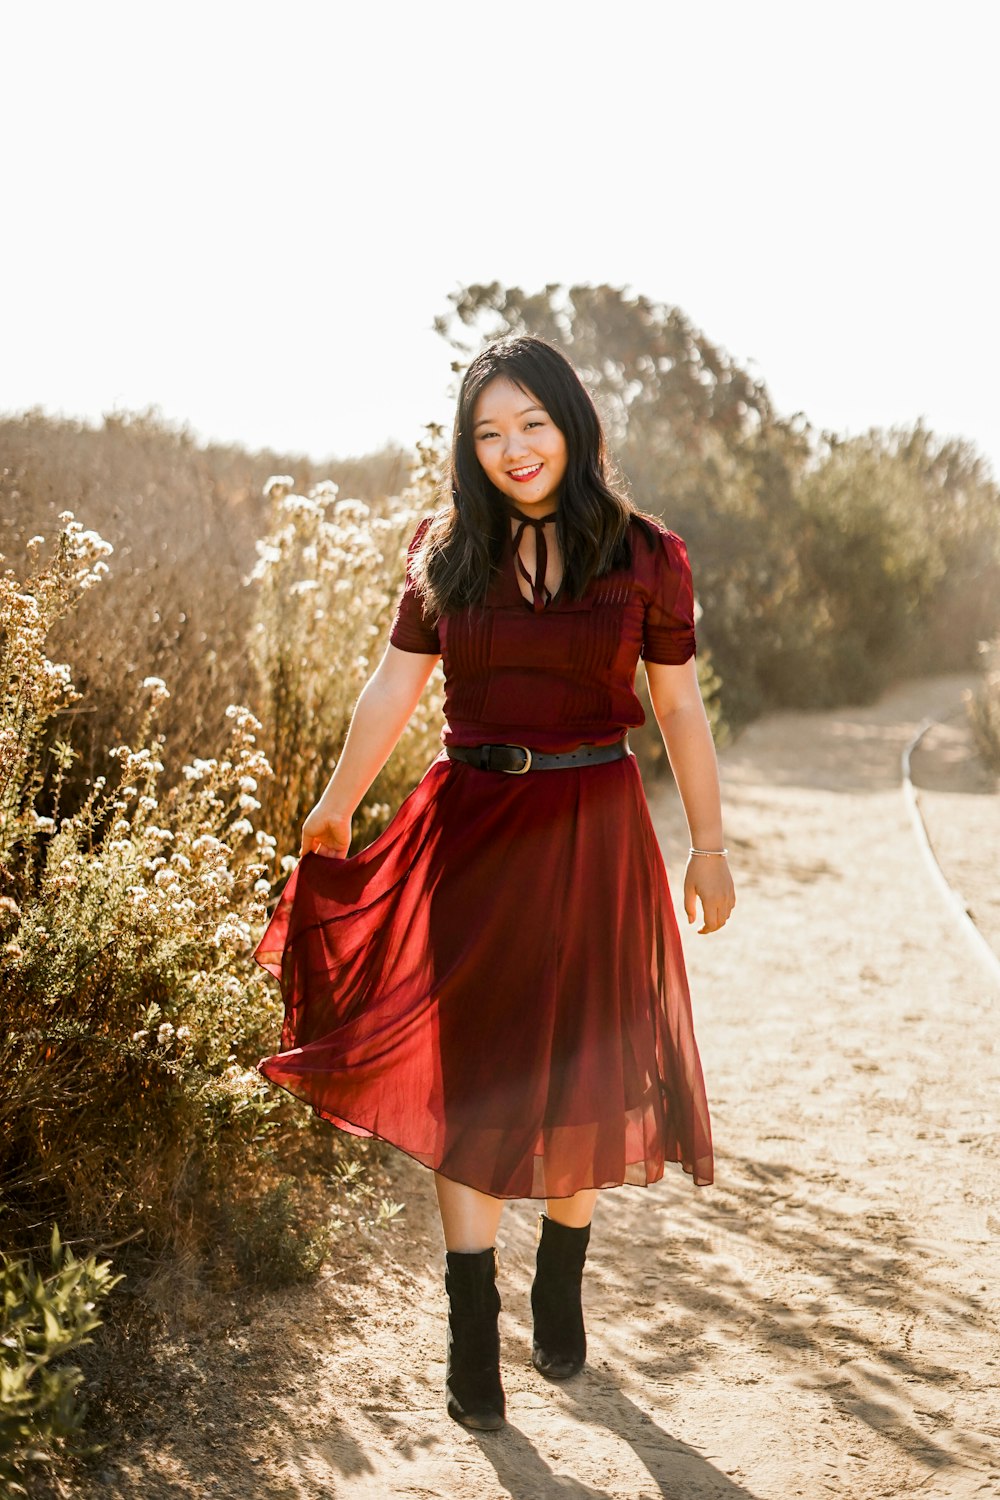 uma mulher com um vestido vermelho caminhando por uma estrada de terra